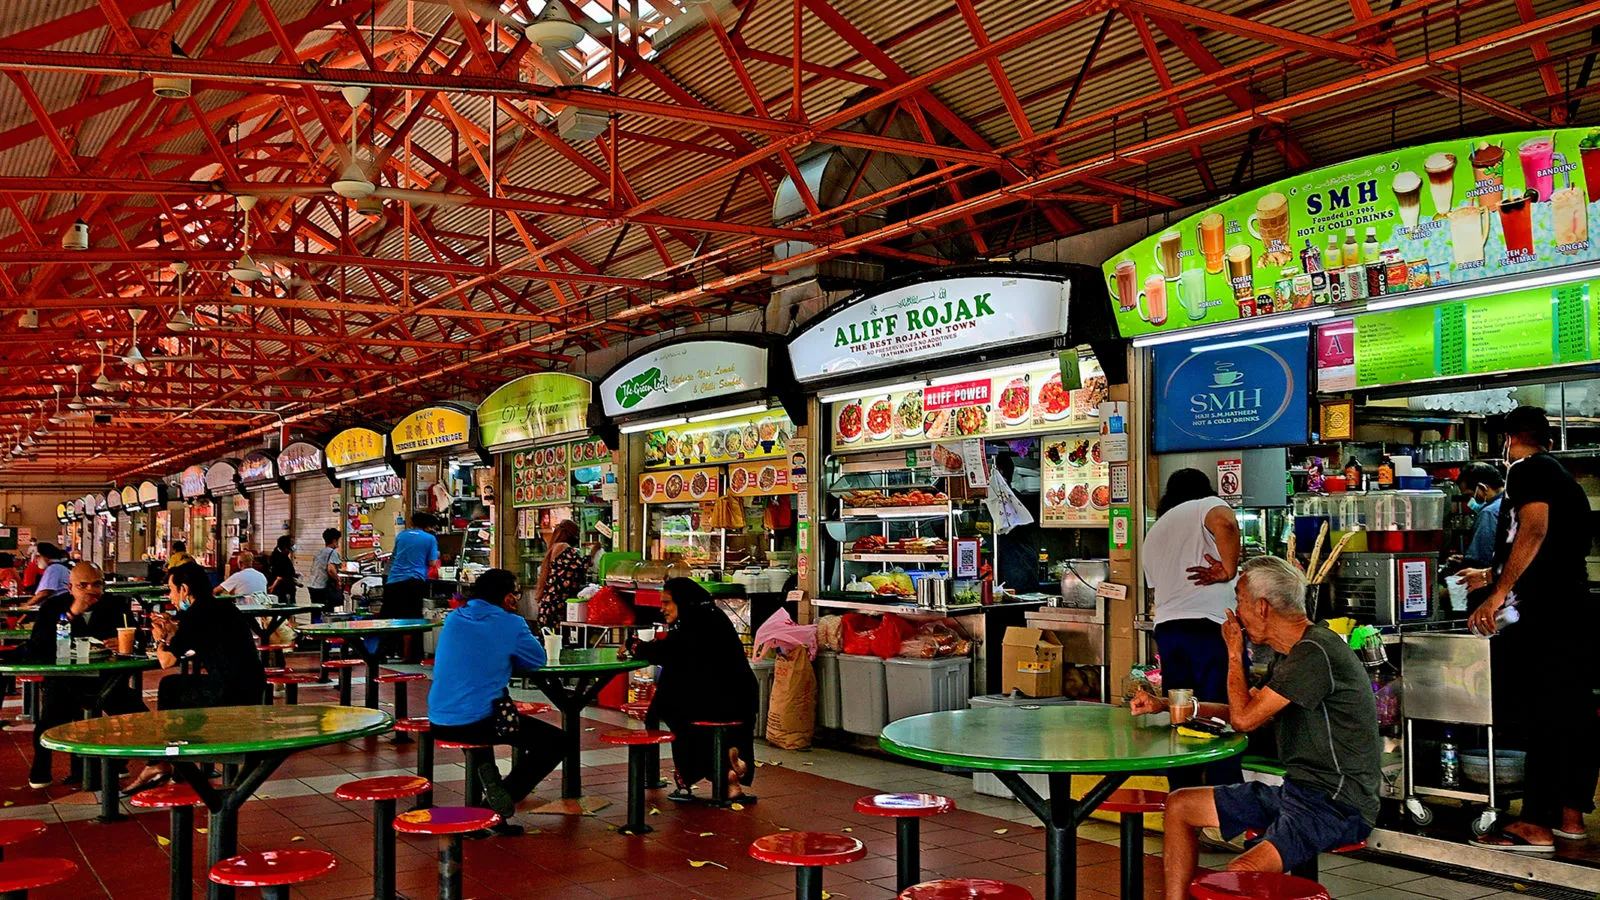 Ăn Tại The Hawker Gian Hàng Khách du lịch không phải trả nhiều tiền để ăn những bữa ăn được chế biến cầu kỳ nhờ nền ẩm thực đa dạng tuyệt vời của Singapore. Khắp thành phố, các quầy bán hàng rong và trung tâm ẩm thực cung cấp các món ăn kết hợp giữa ẩm thực Singapore, Malaysia và Trung Quốc. Khách du lịch có thể mua những món ăn ngon tại Chinatown Food Center, một địa danh địa phương, với giá khoảng 5 SGD ($3,75 USD). Họ cũng có thể nếm thử các món ngon của vùng như cơm gà, cua sốt ớt và súp Laksa, đây là những bữa ăn ngon và nhất định phải thử .   Những hàng rong nổi tiếng: Maxwell Food Center, Chinatown Complex Food Center, Satay by the Bay